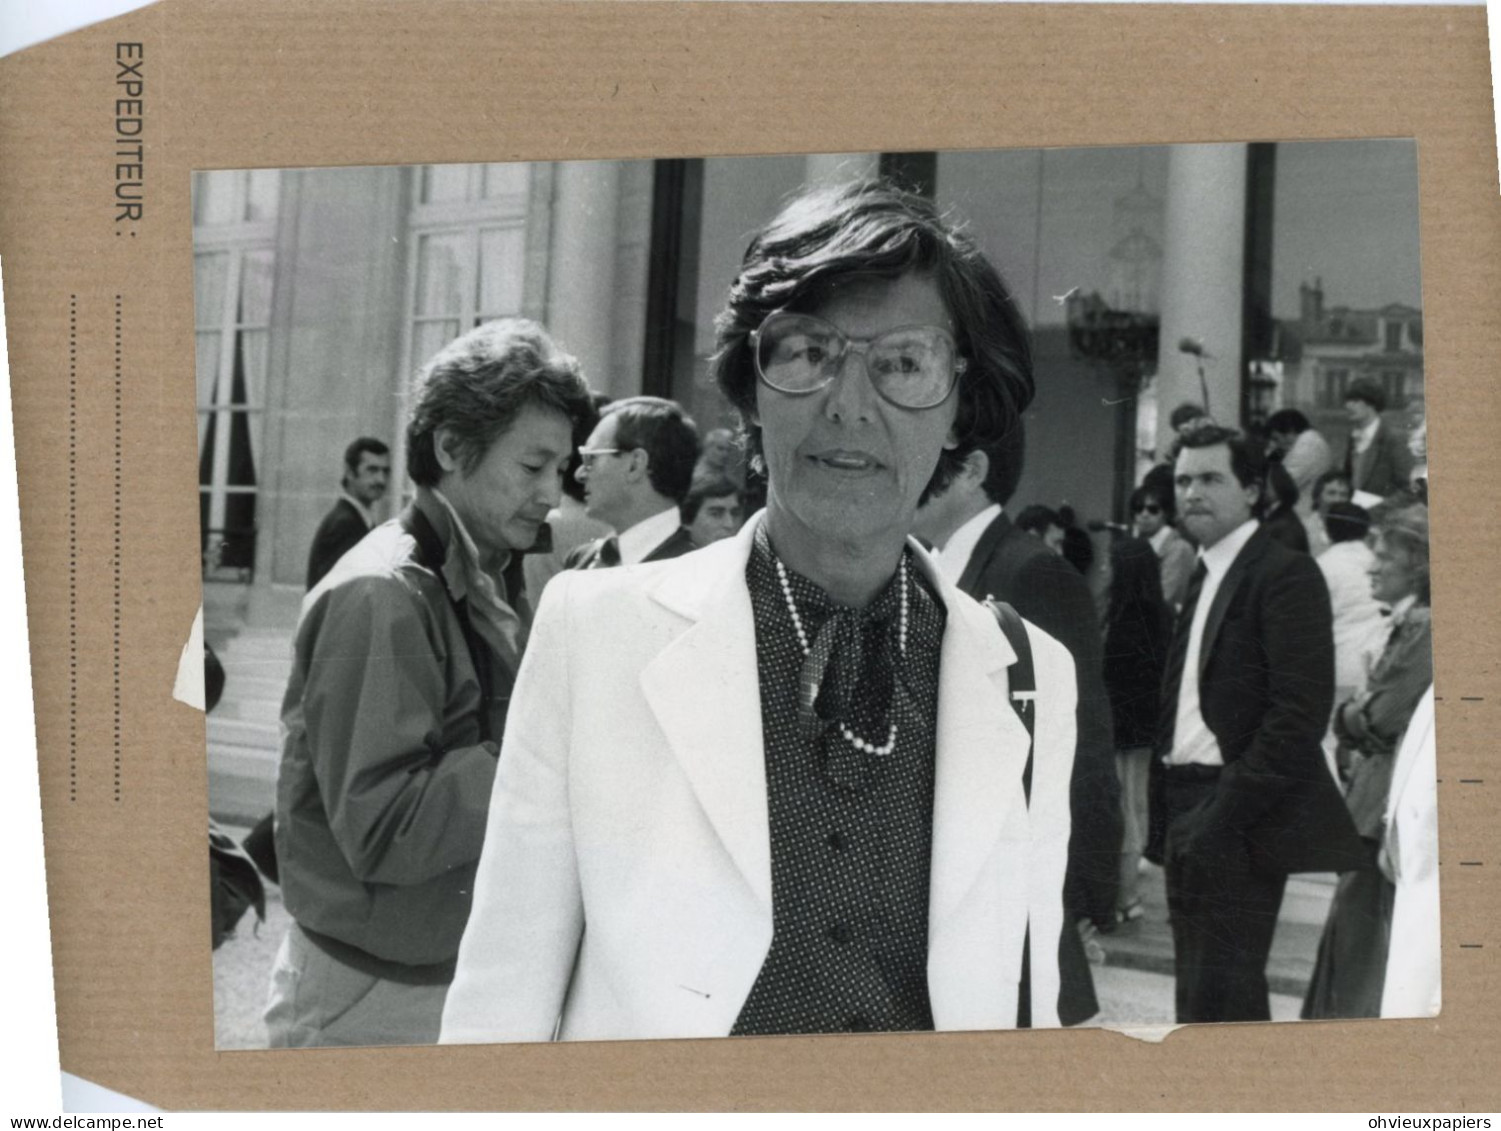 lot de 17 photos  - MONIQUE PELLETIER  femme politique, ministre  déléguée à  la condition féminine  en 1979